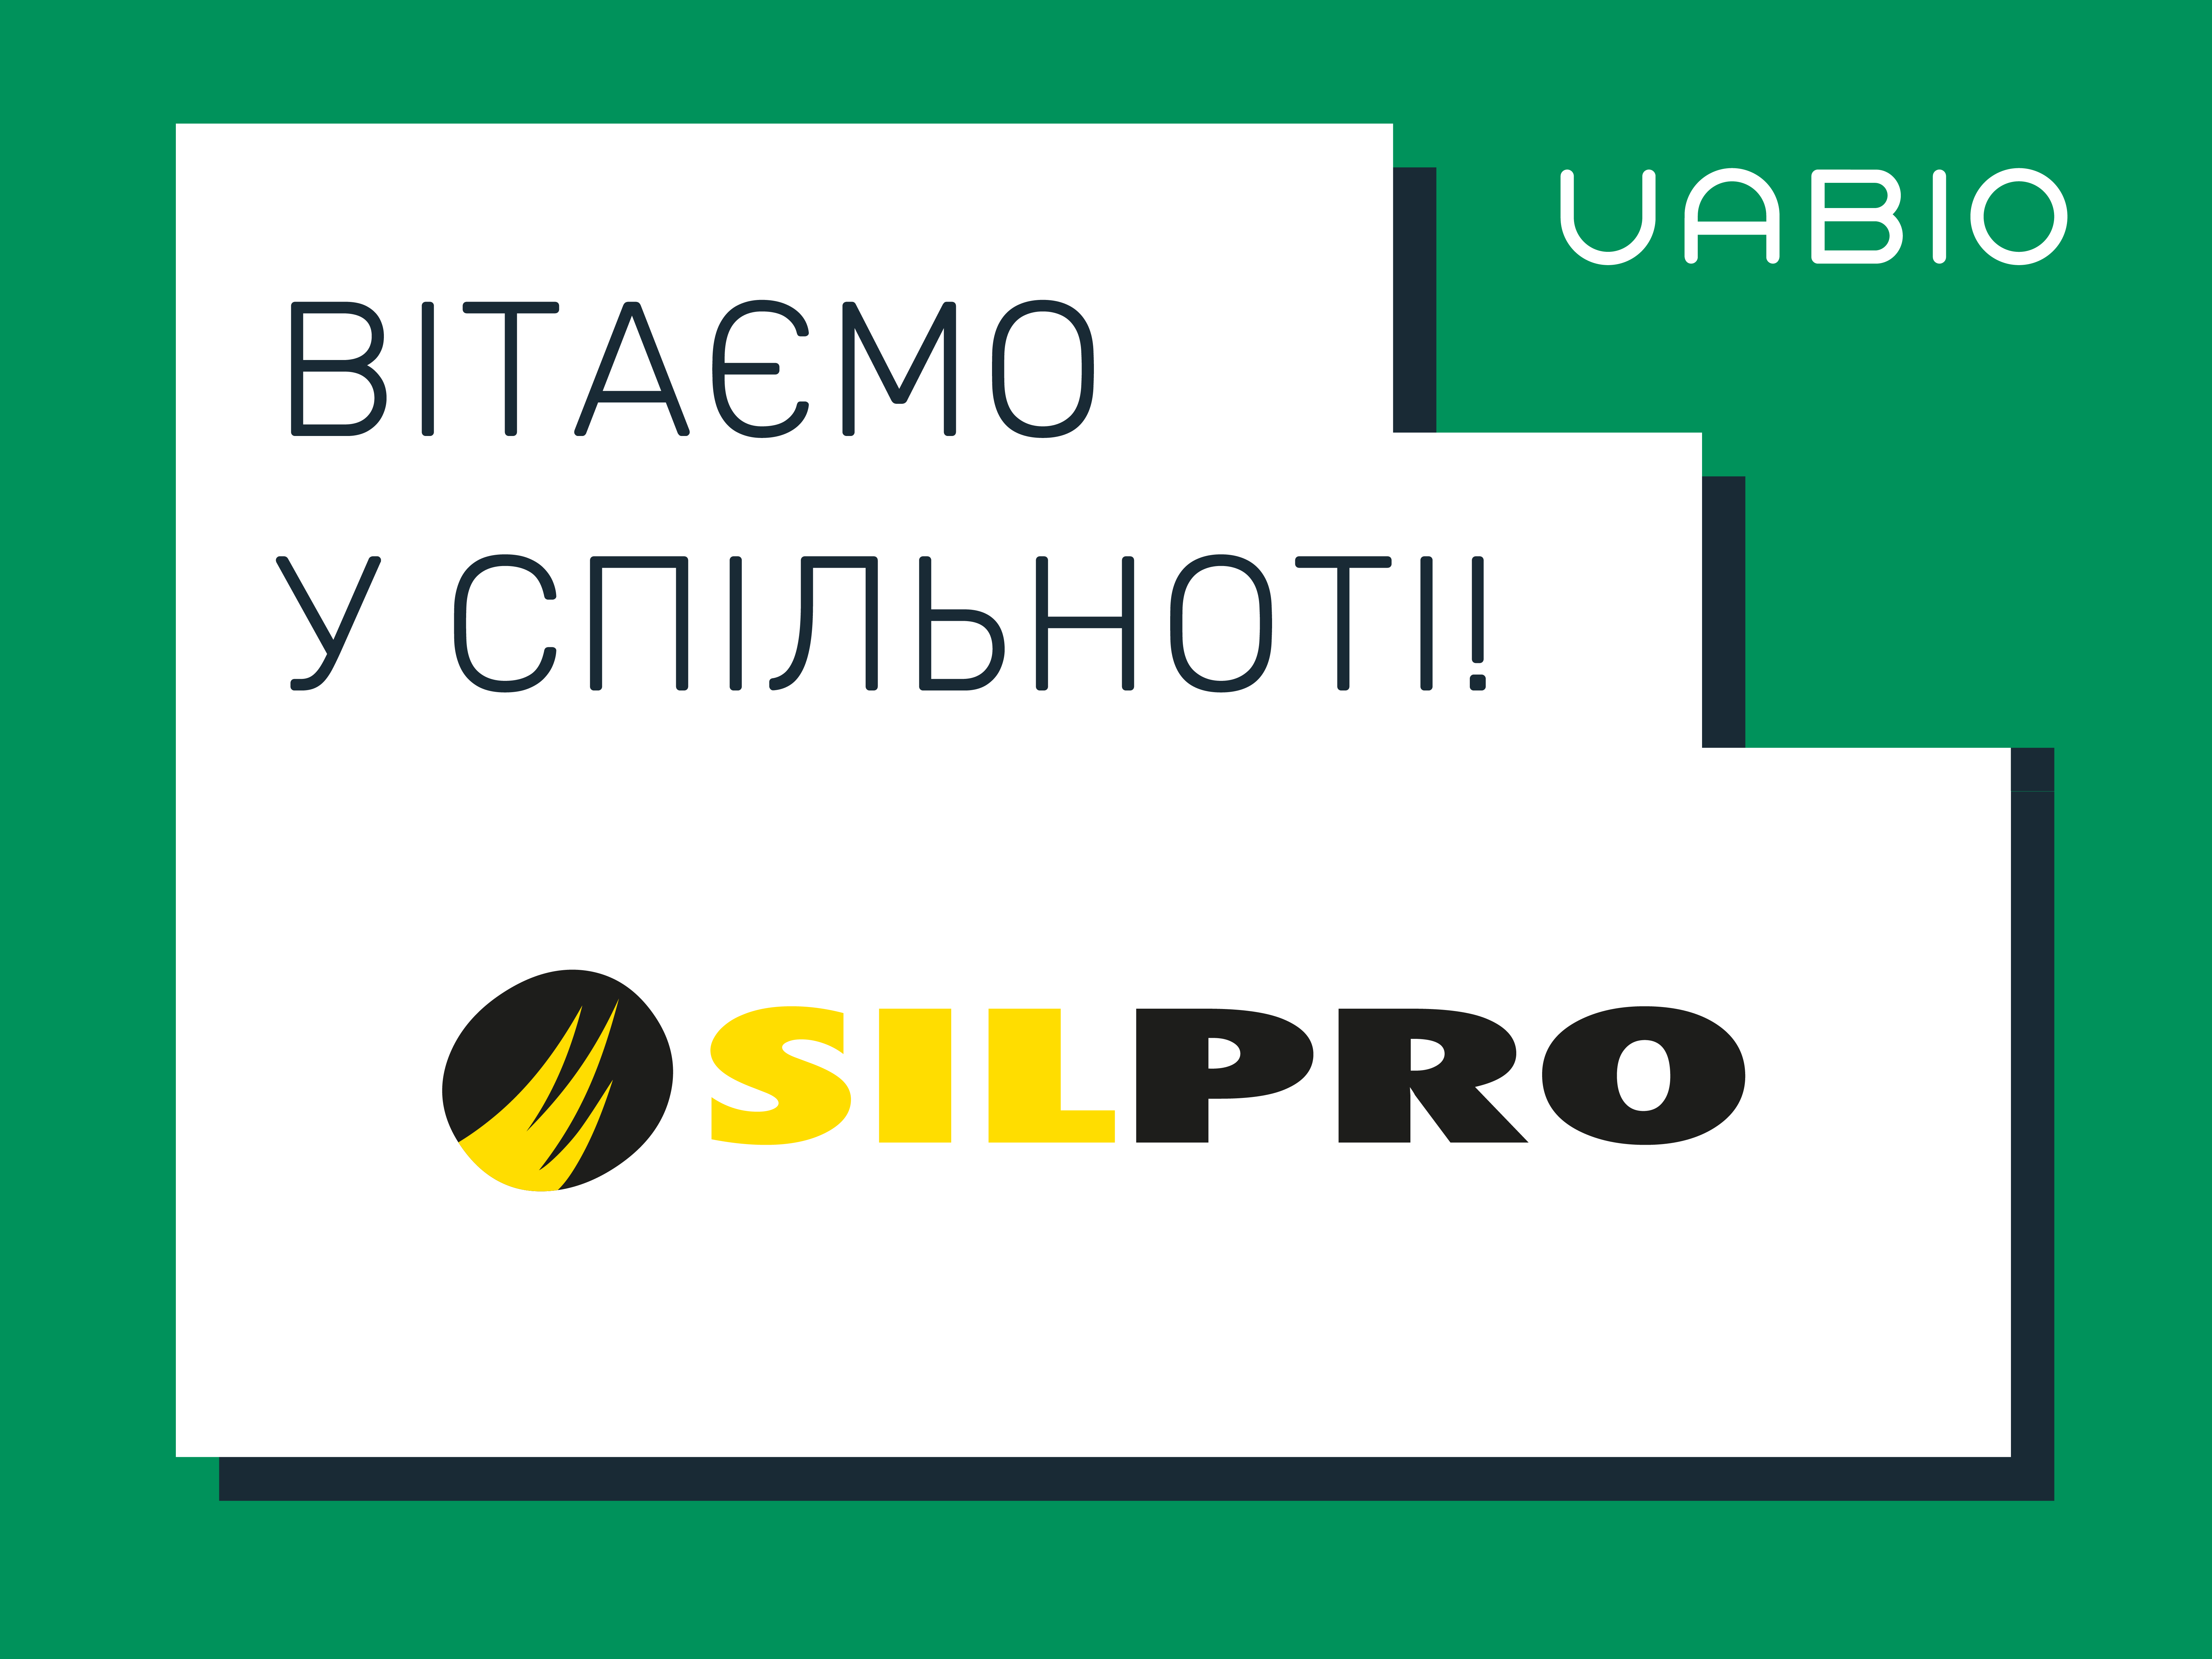 Вітаємо у команді UABIO нового члена – компанію Silpro!